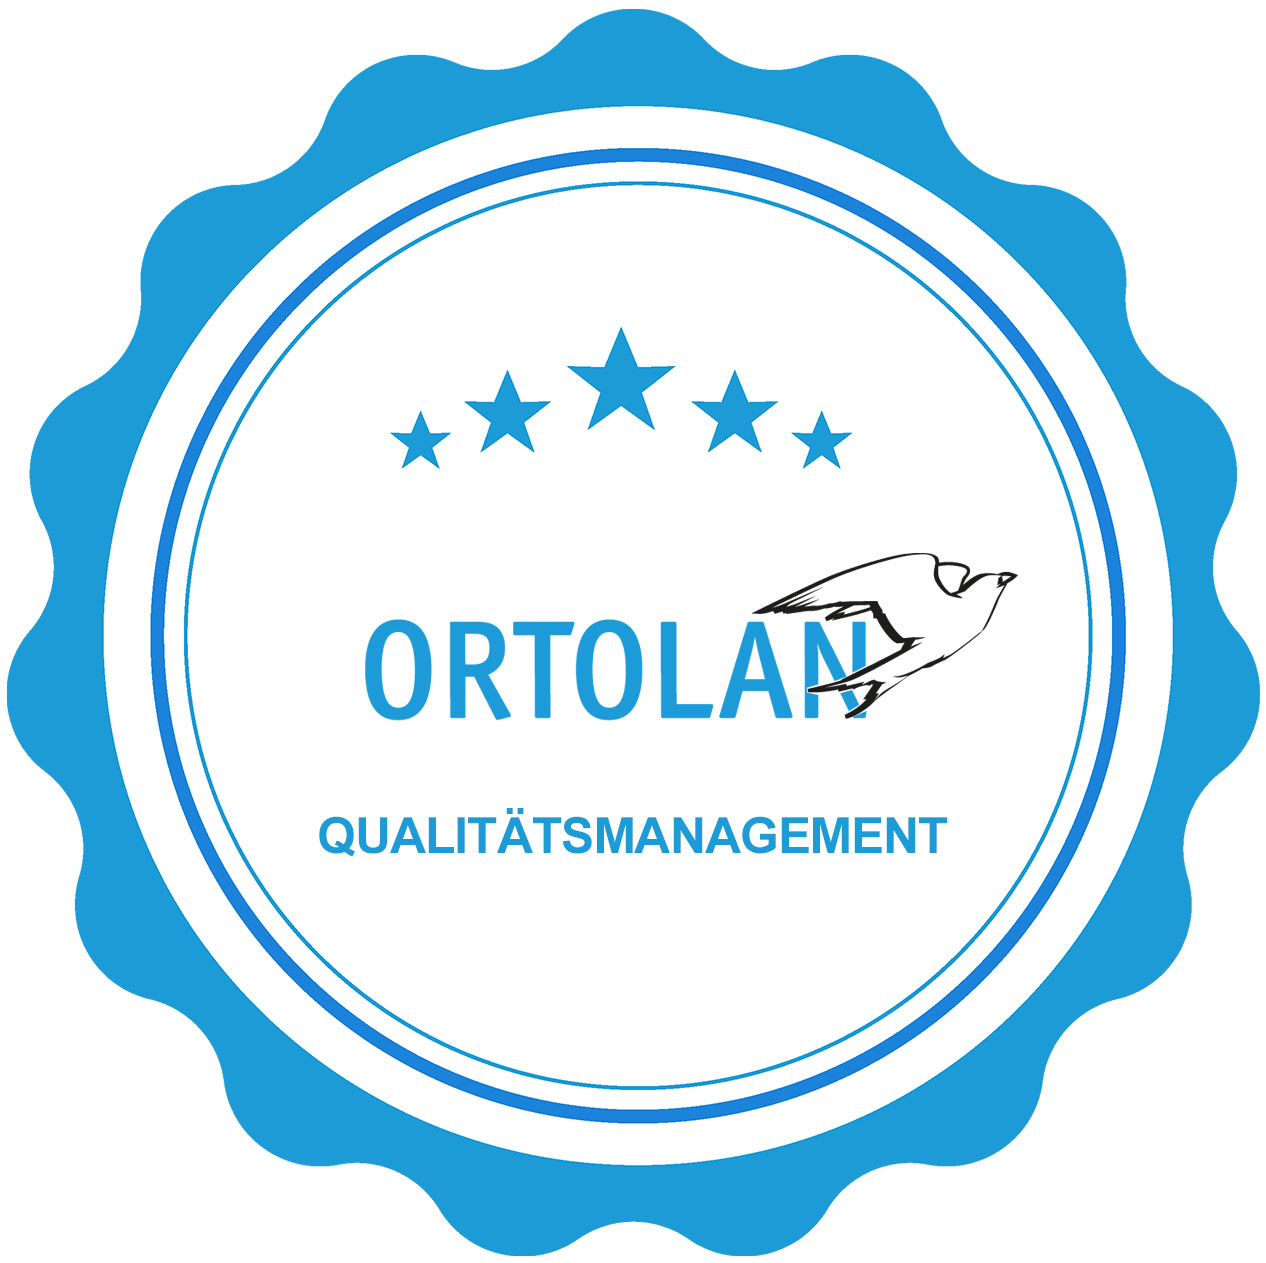 ORTOLAN Qualitätsmanagement